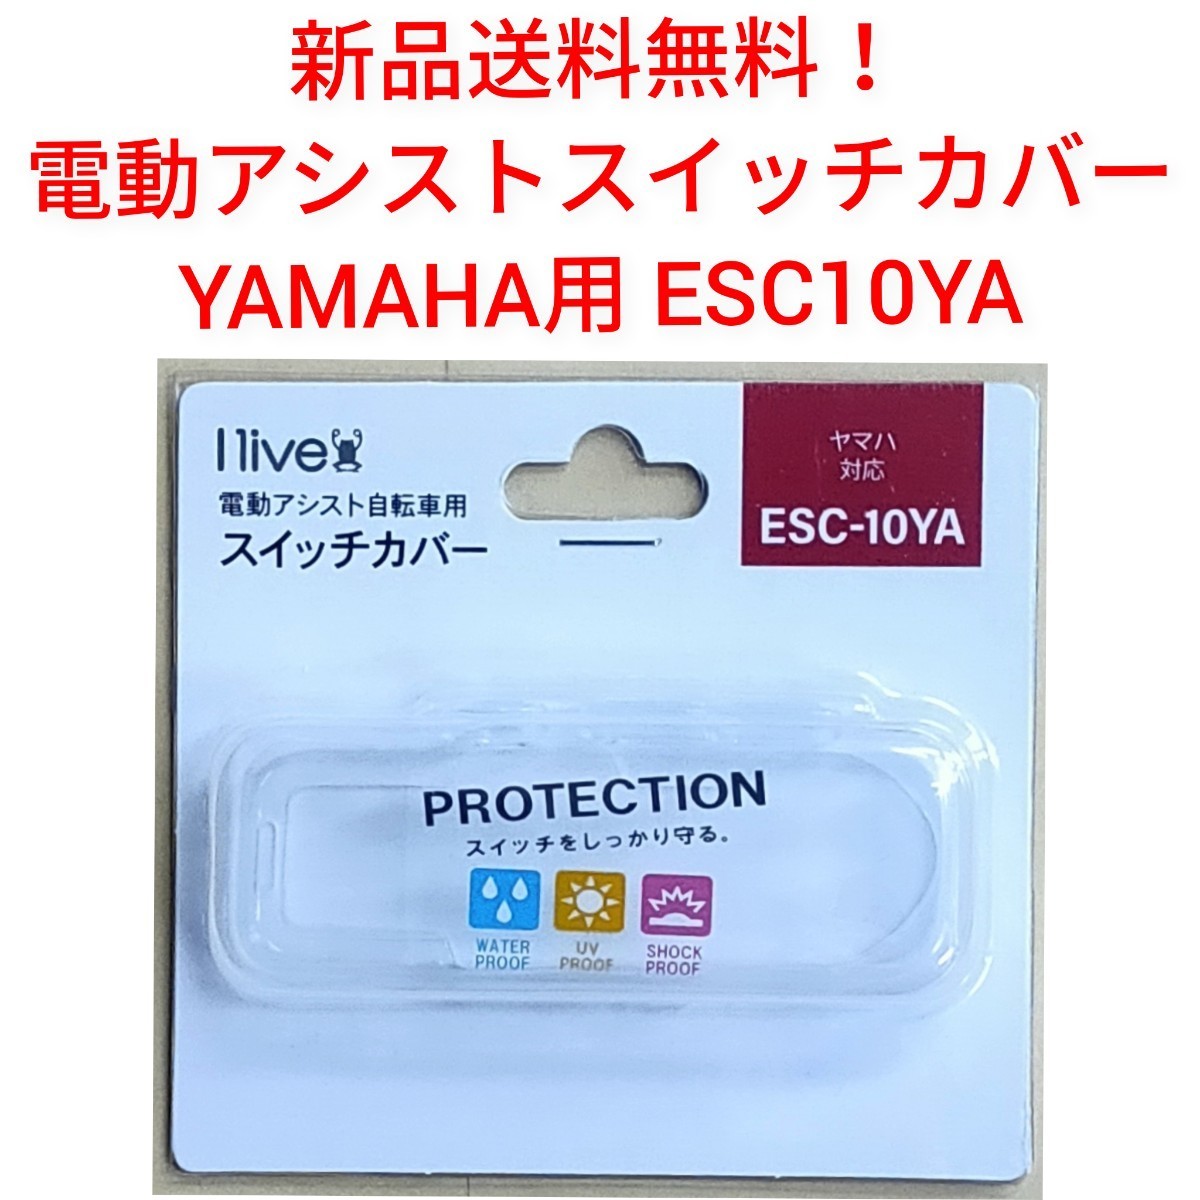 【新品送料無料】 スイッチカバー ヤマハ用 ESC-10YA スイッチガード メイン 保護 液晶 手元 リモコン 自転車 電動 アシスト YAMAHA 部品の画像1